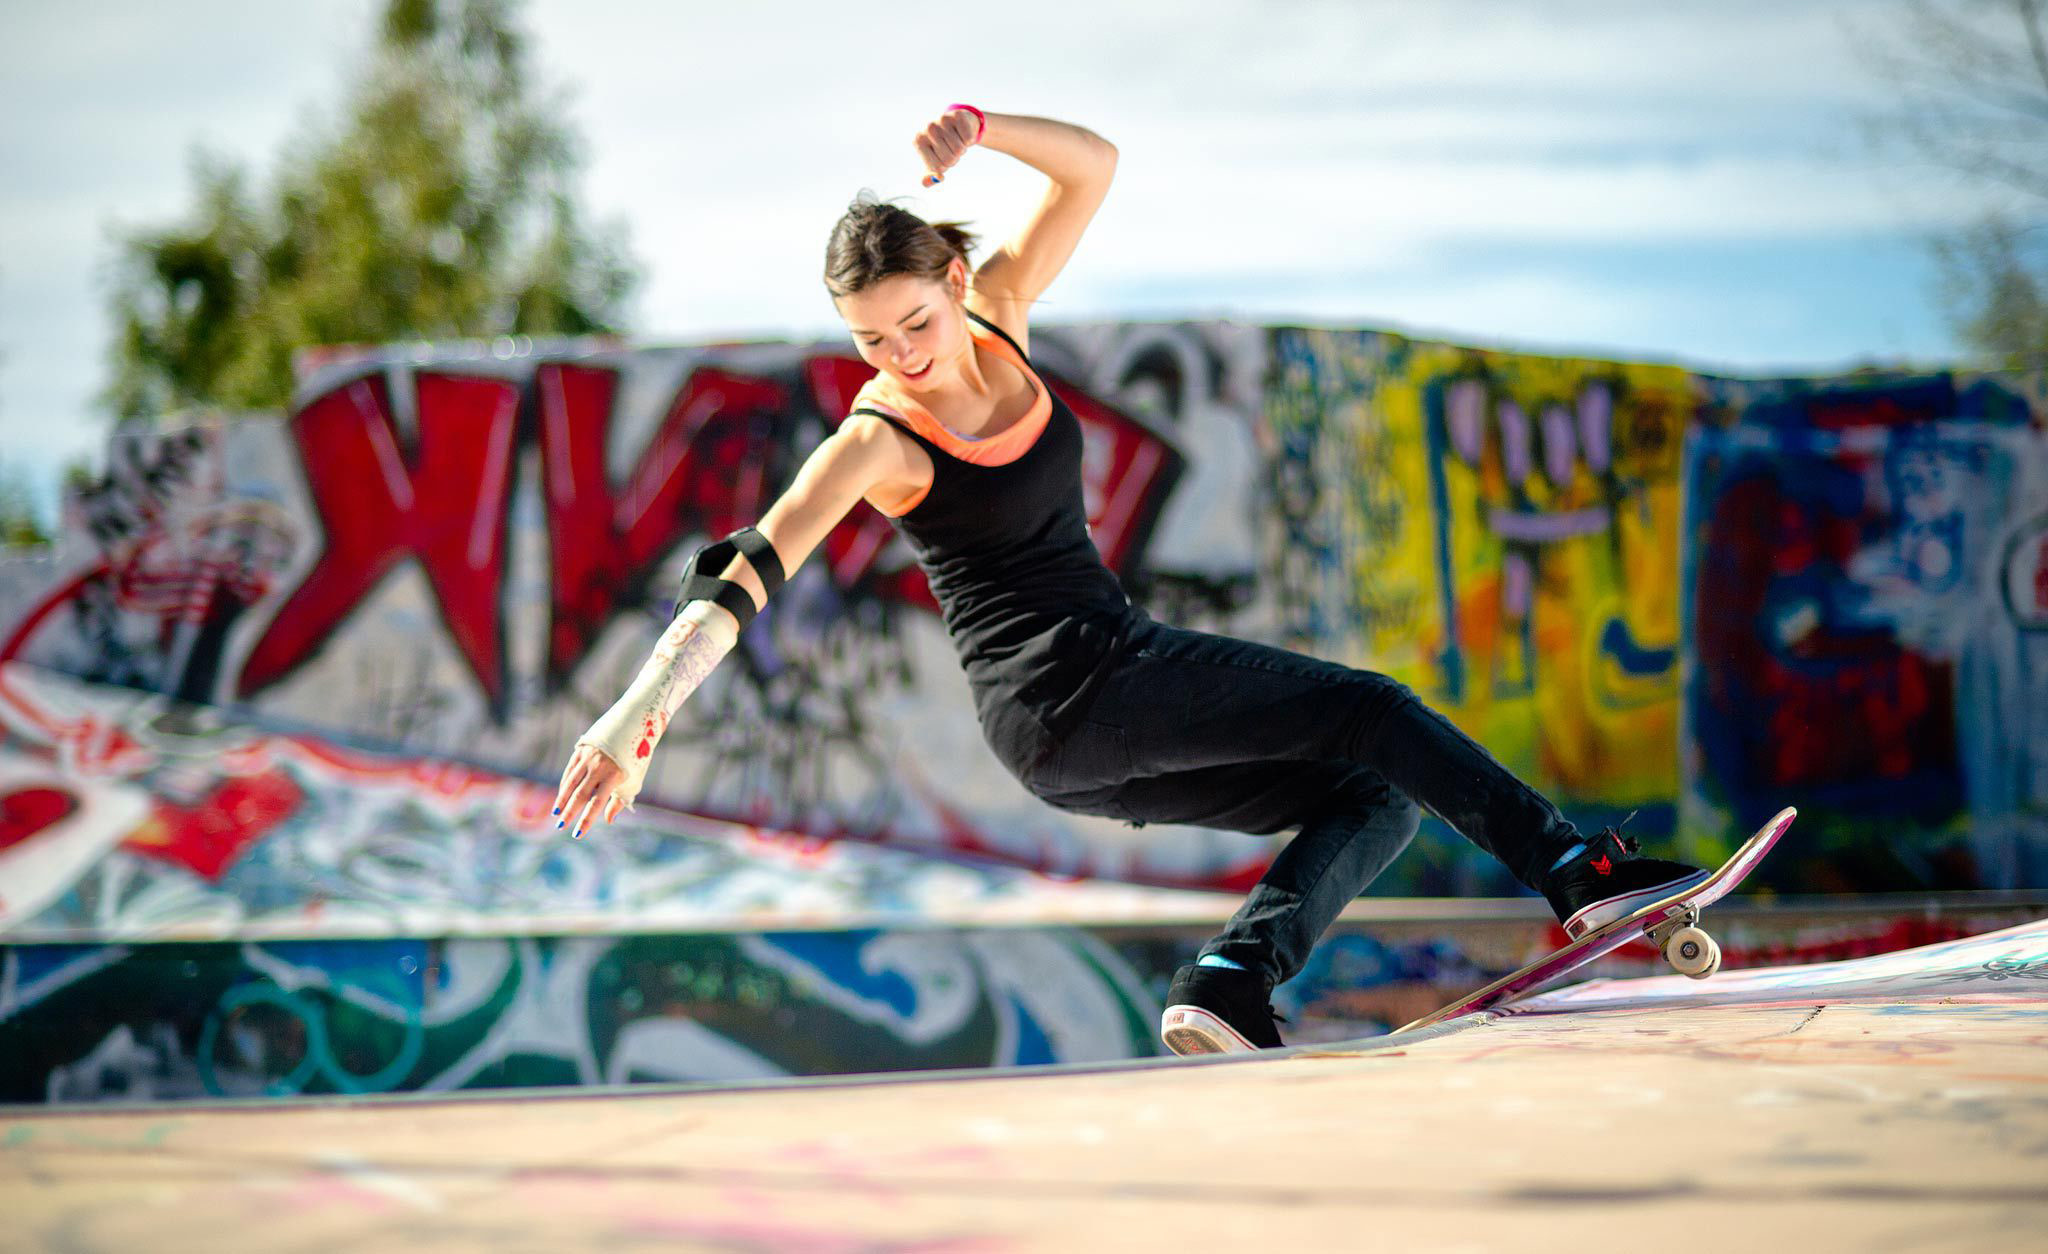 ragazza skateboard wallpaper,andare con lo skateboard,sport estremo,gli sport,skateboard,attrezzatura sportiva